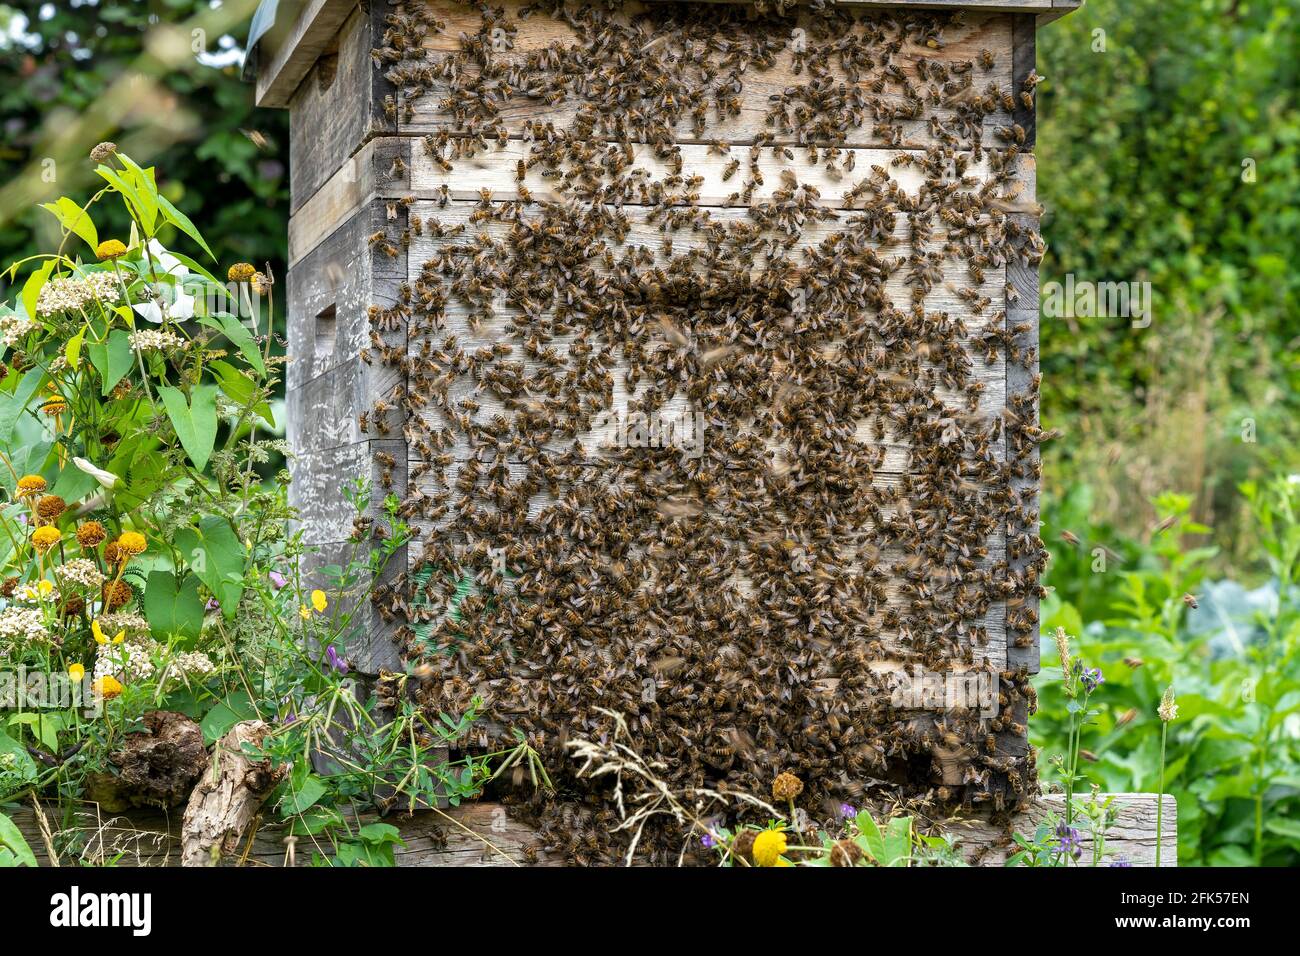 Die Bienenkästen (Bienenbeuten) in der natürlichen Blumenwiese und vor einem Gemüsegarten viele Bienen am Kasten - Apis mellifera Foto Stock